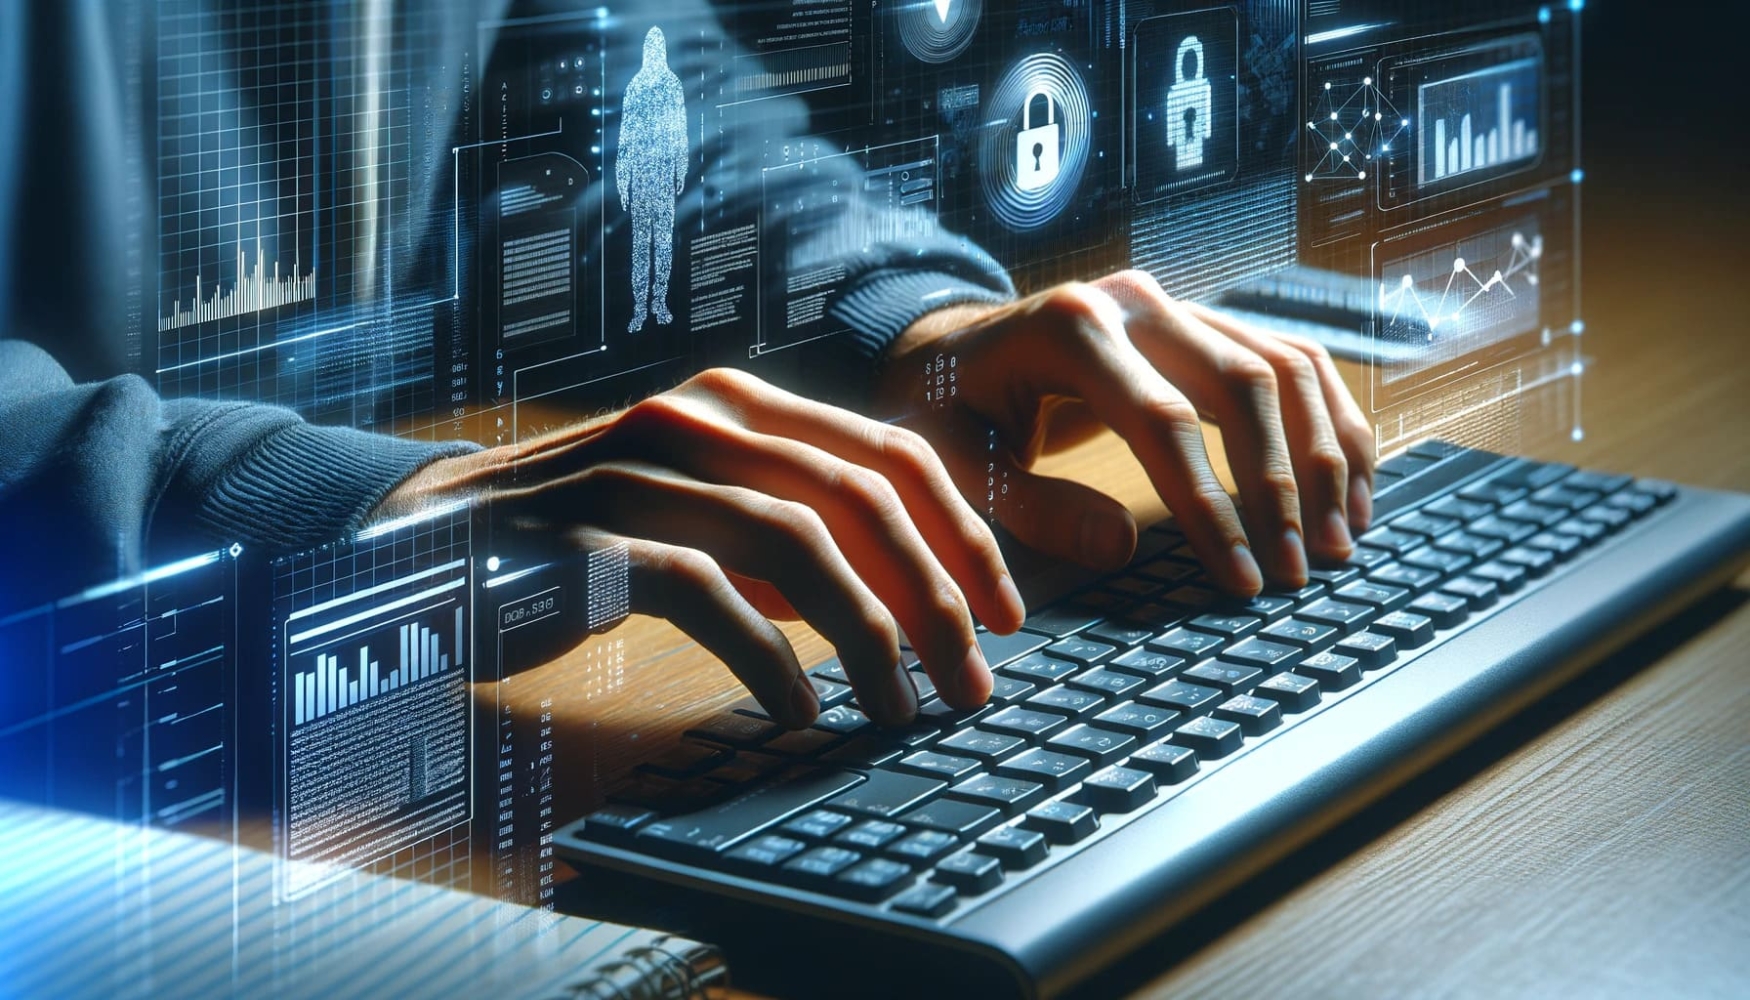 Grafica computerizzata di un uomo che digita su una tastiera, con uno sfondo futuristico alle spalle e un'immagine digitale di una mano sulla tastiera